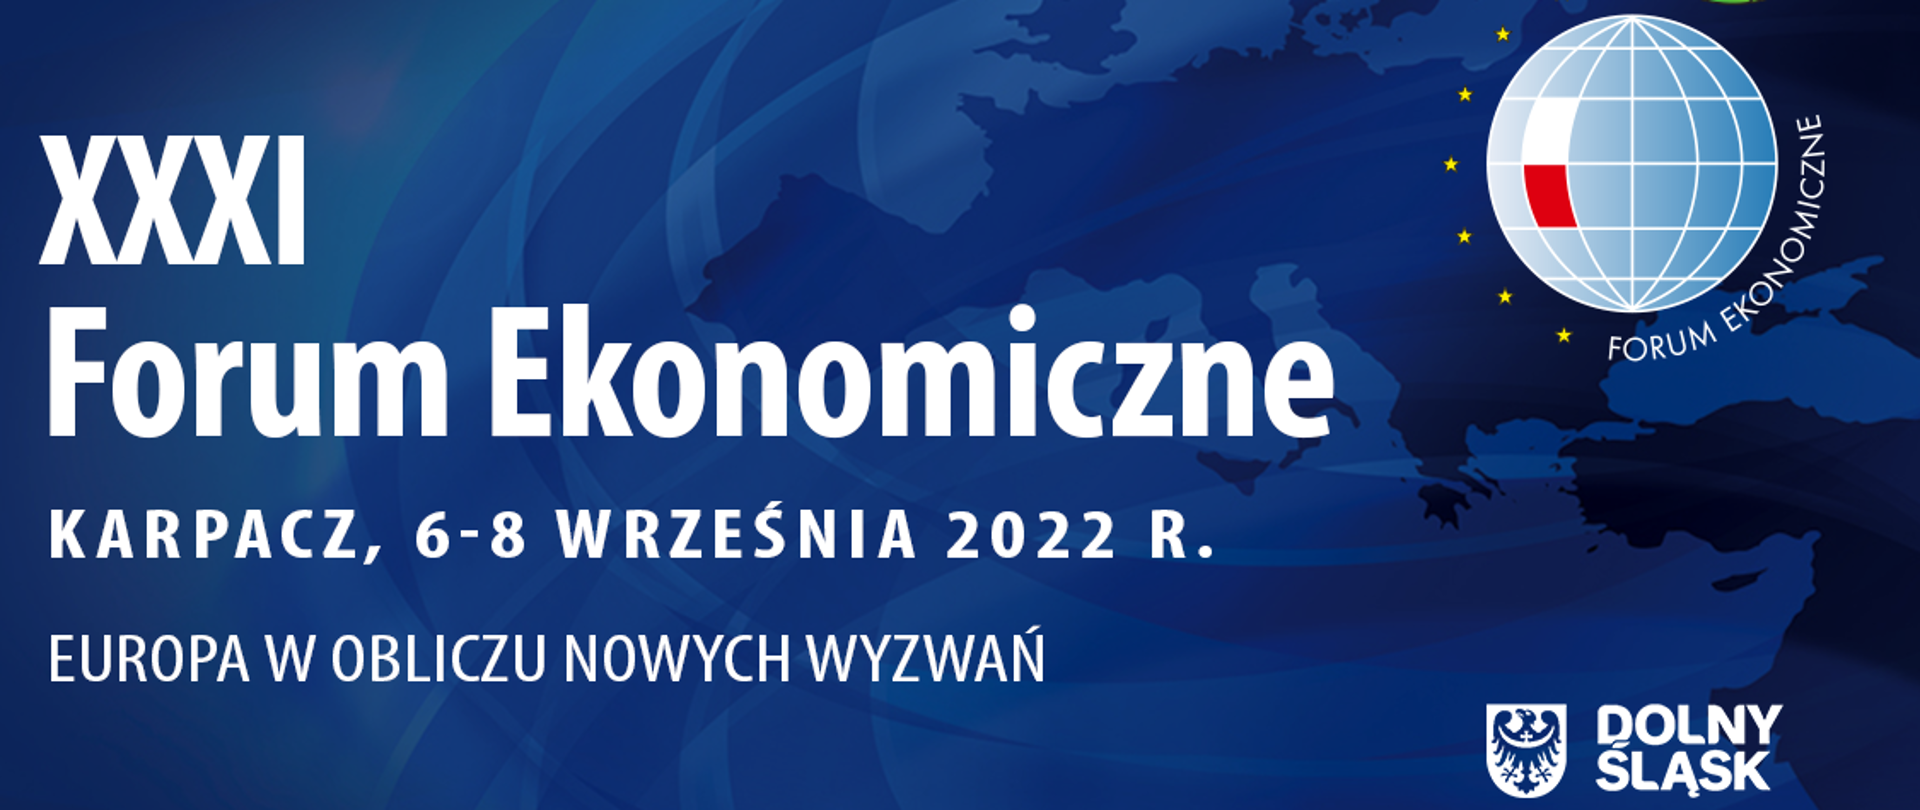 20220906_XXXI_Forum_Ekonomiczne_w_Karpaczu